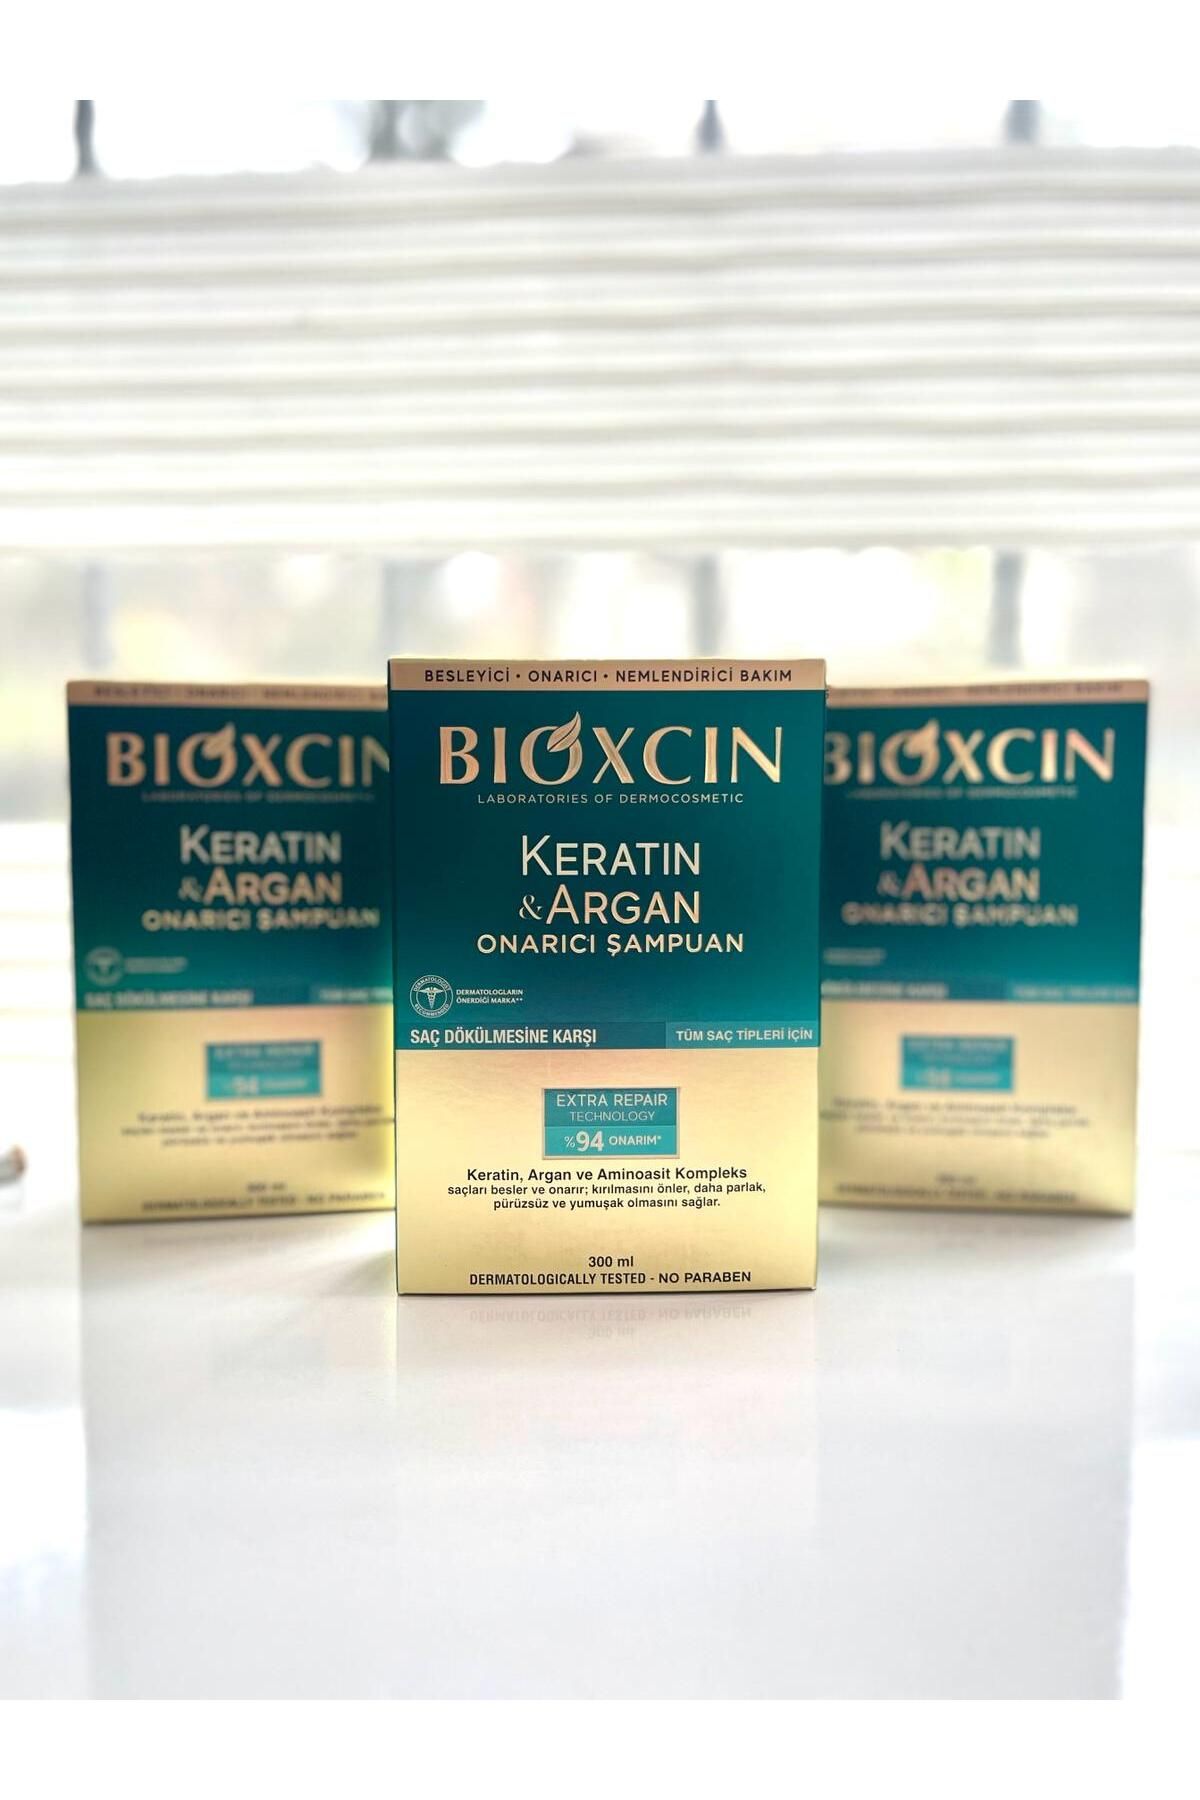 Bioxcin Keratin & Argan Onarıcı Şampuan 300 ml 3'LÜ SET